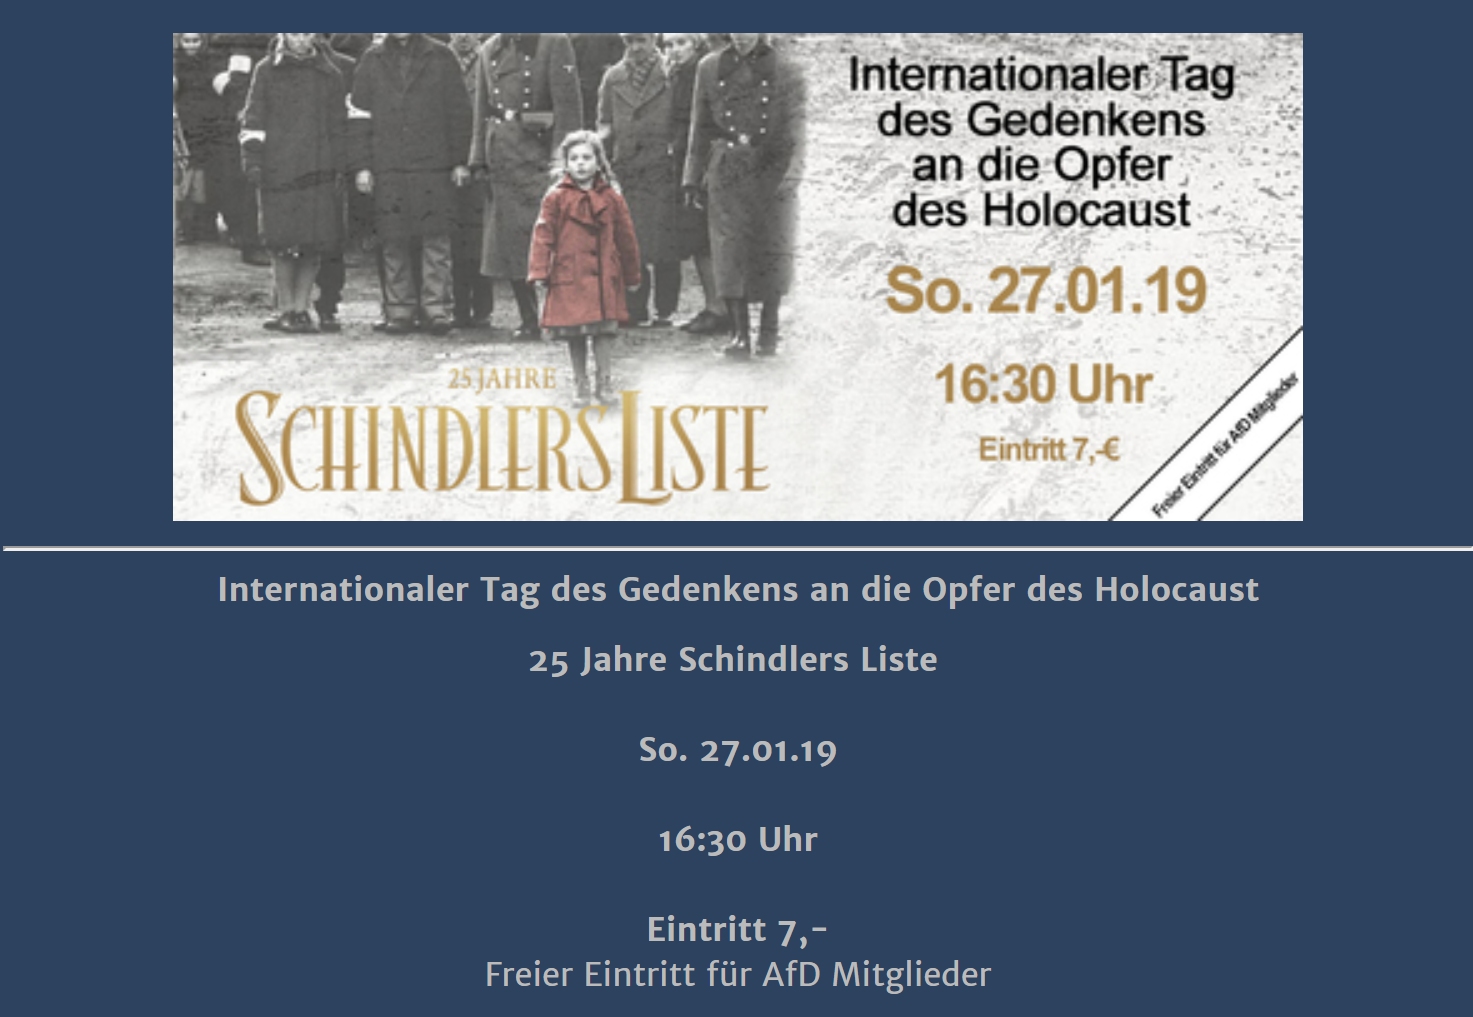 Kino zeigt Schindlers Liste  AfD-Mitglieder erhalten freien Eintritt